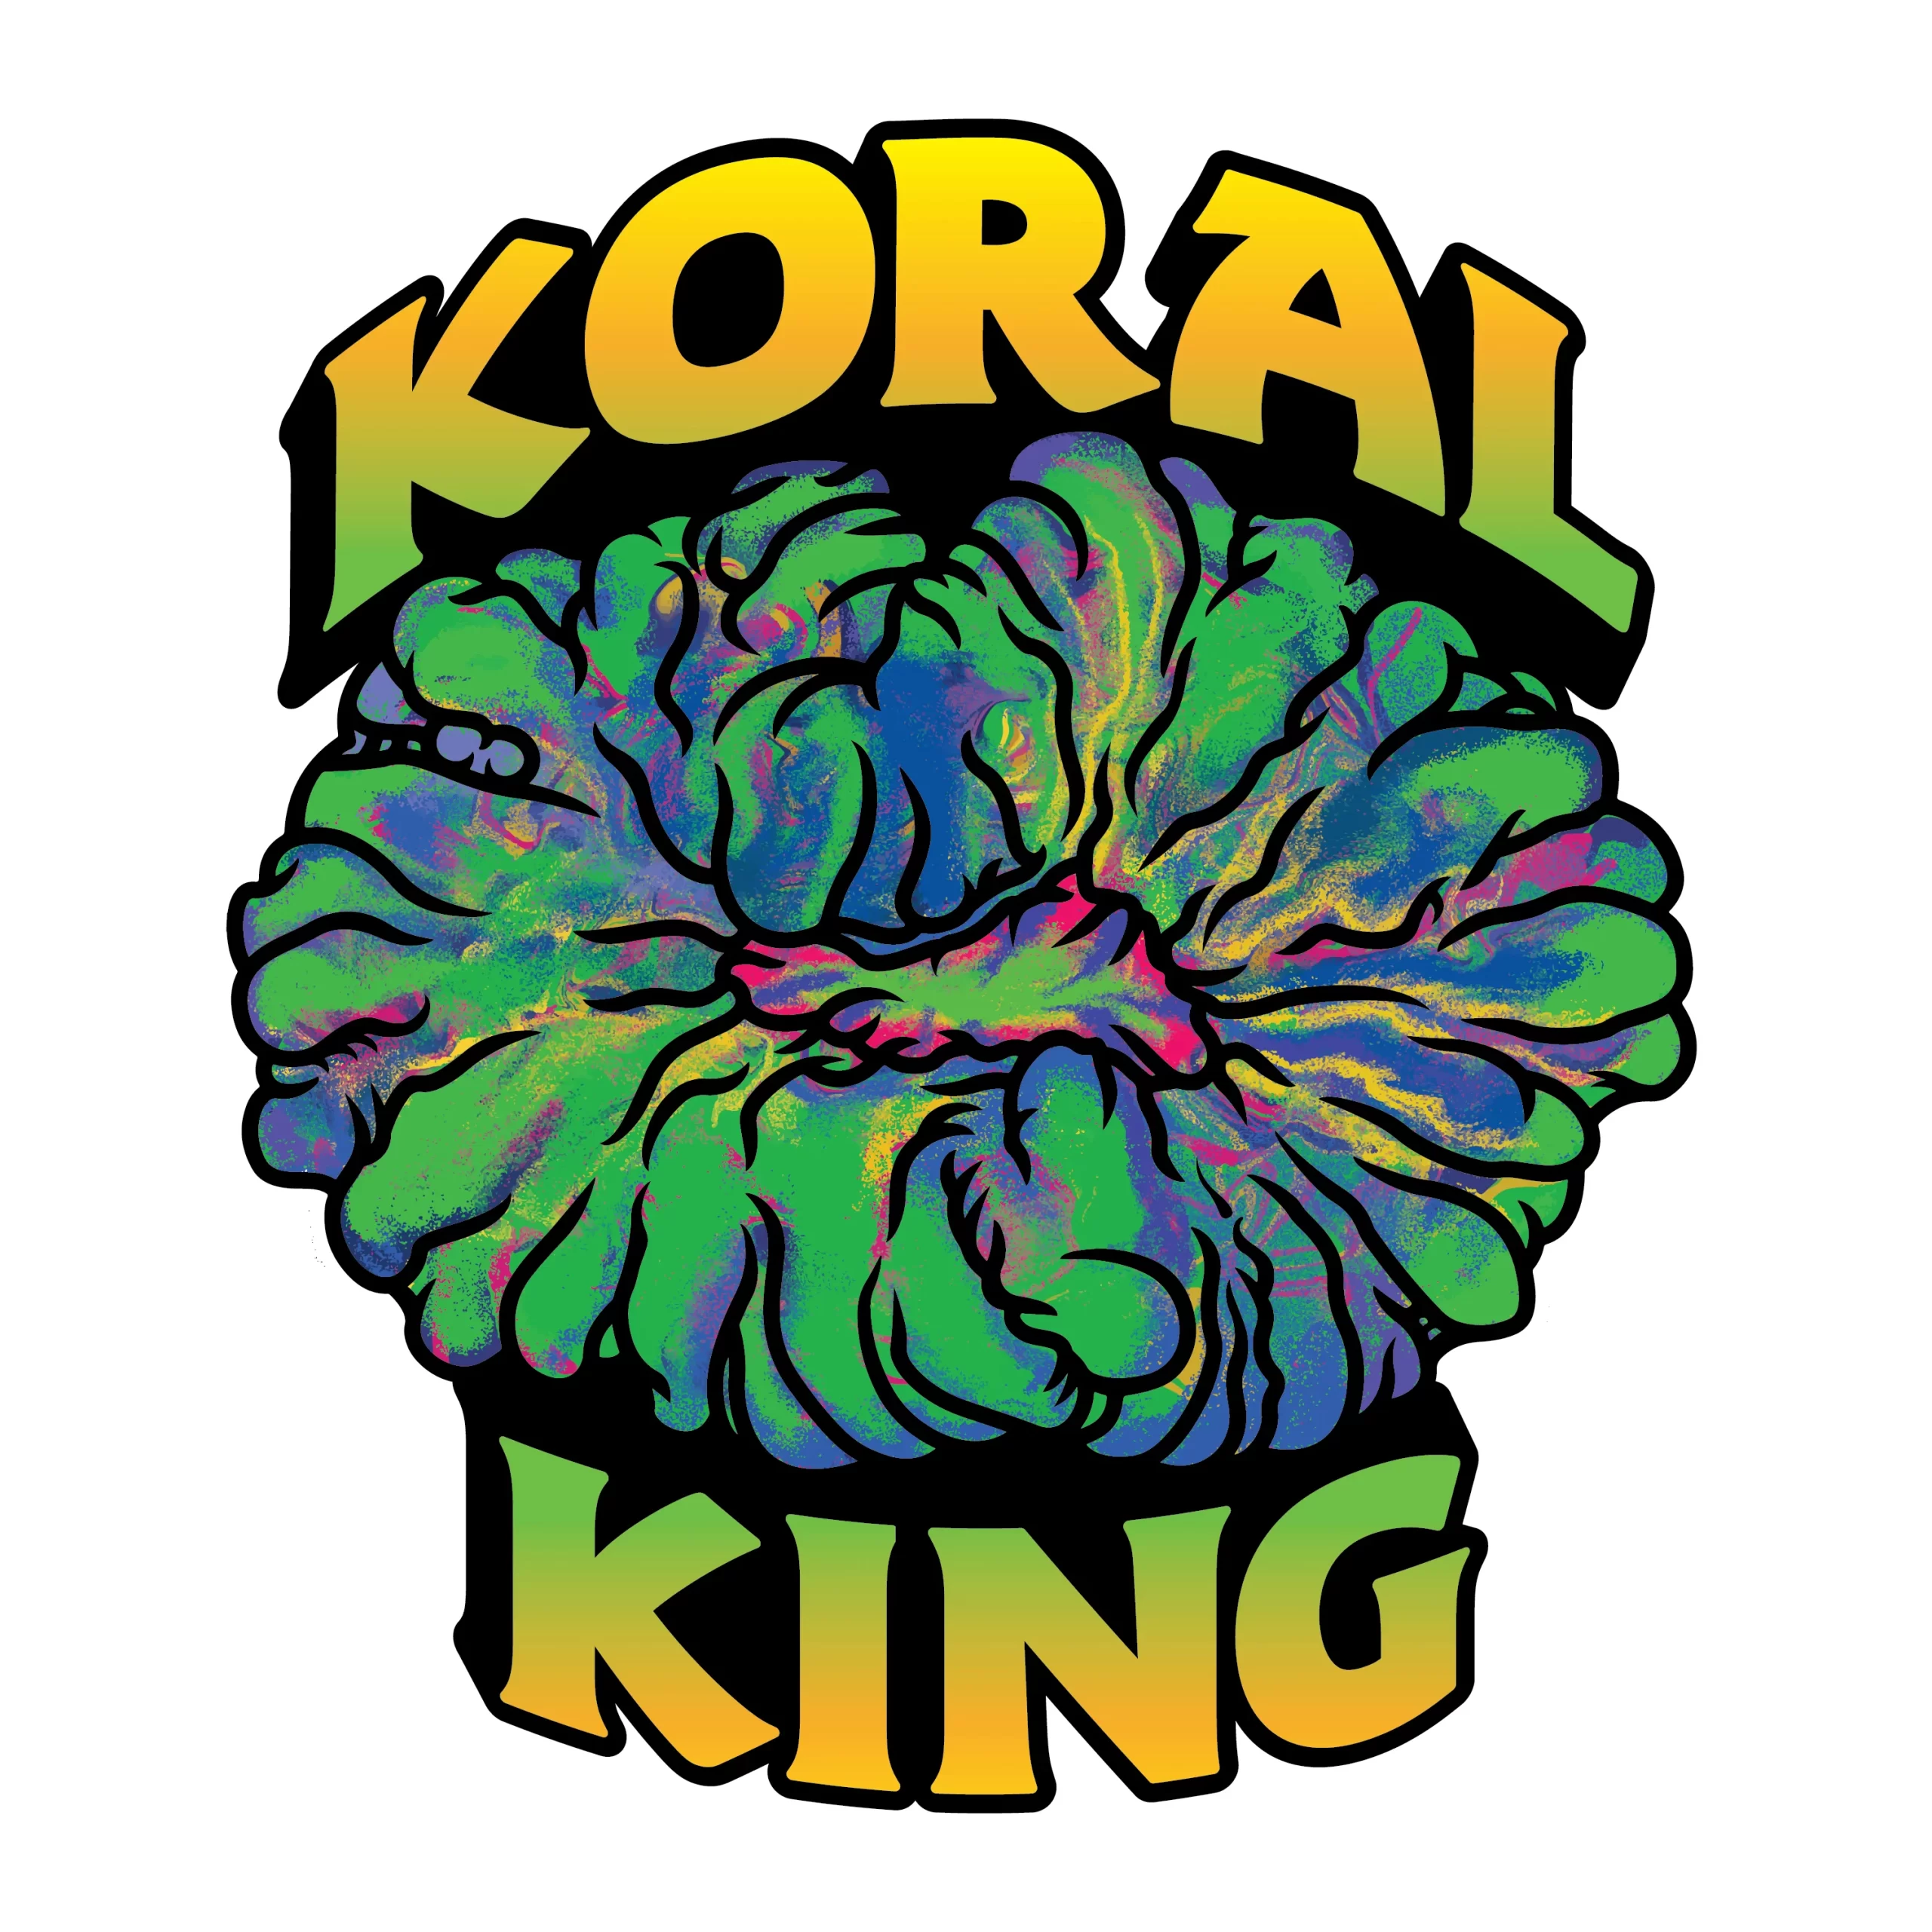 Koral King